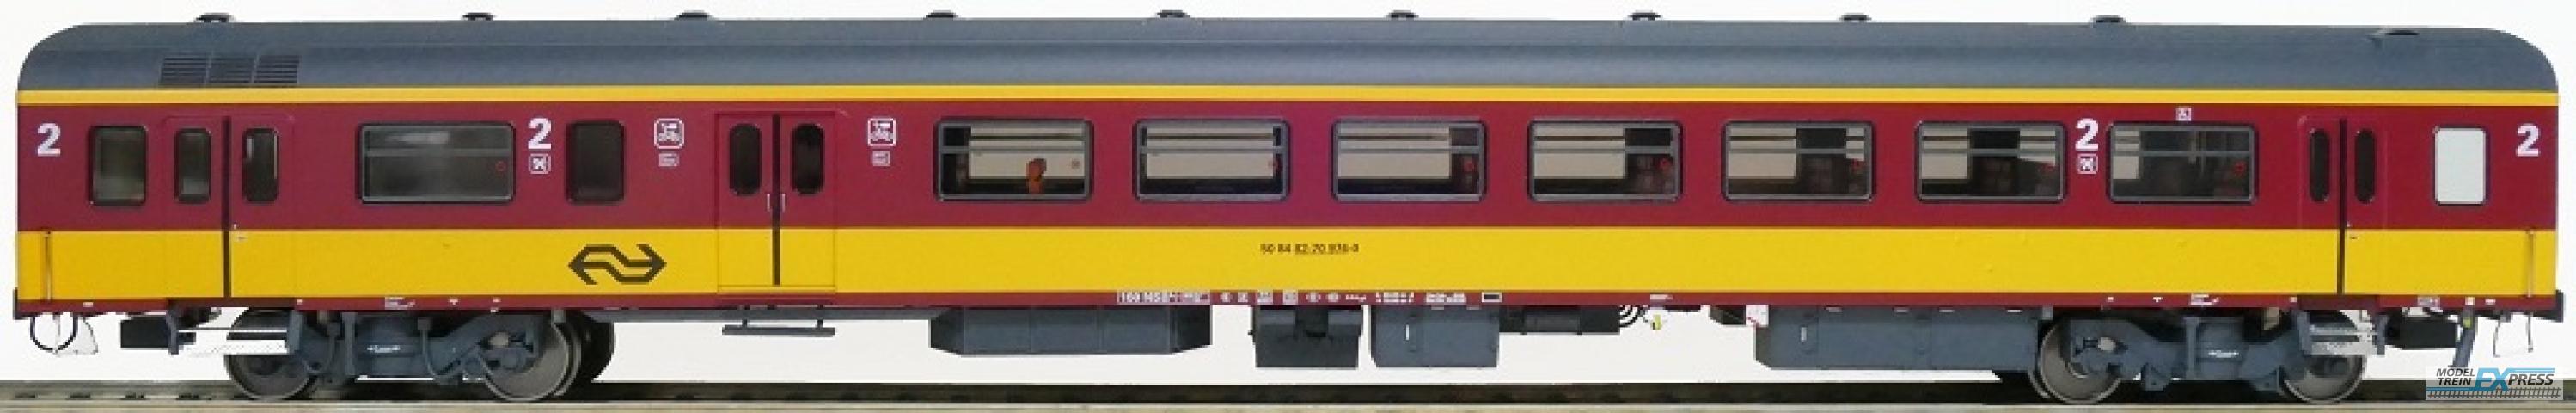 Exact-train 11169 NS ICR (Originalversion) für den Beneluxzug nach Belgien Gepäckwagen BKD ( Farbe Gelb / Rot) mit Beleuchtung und Figuren, Ep. IV